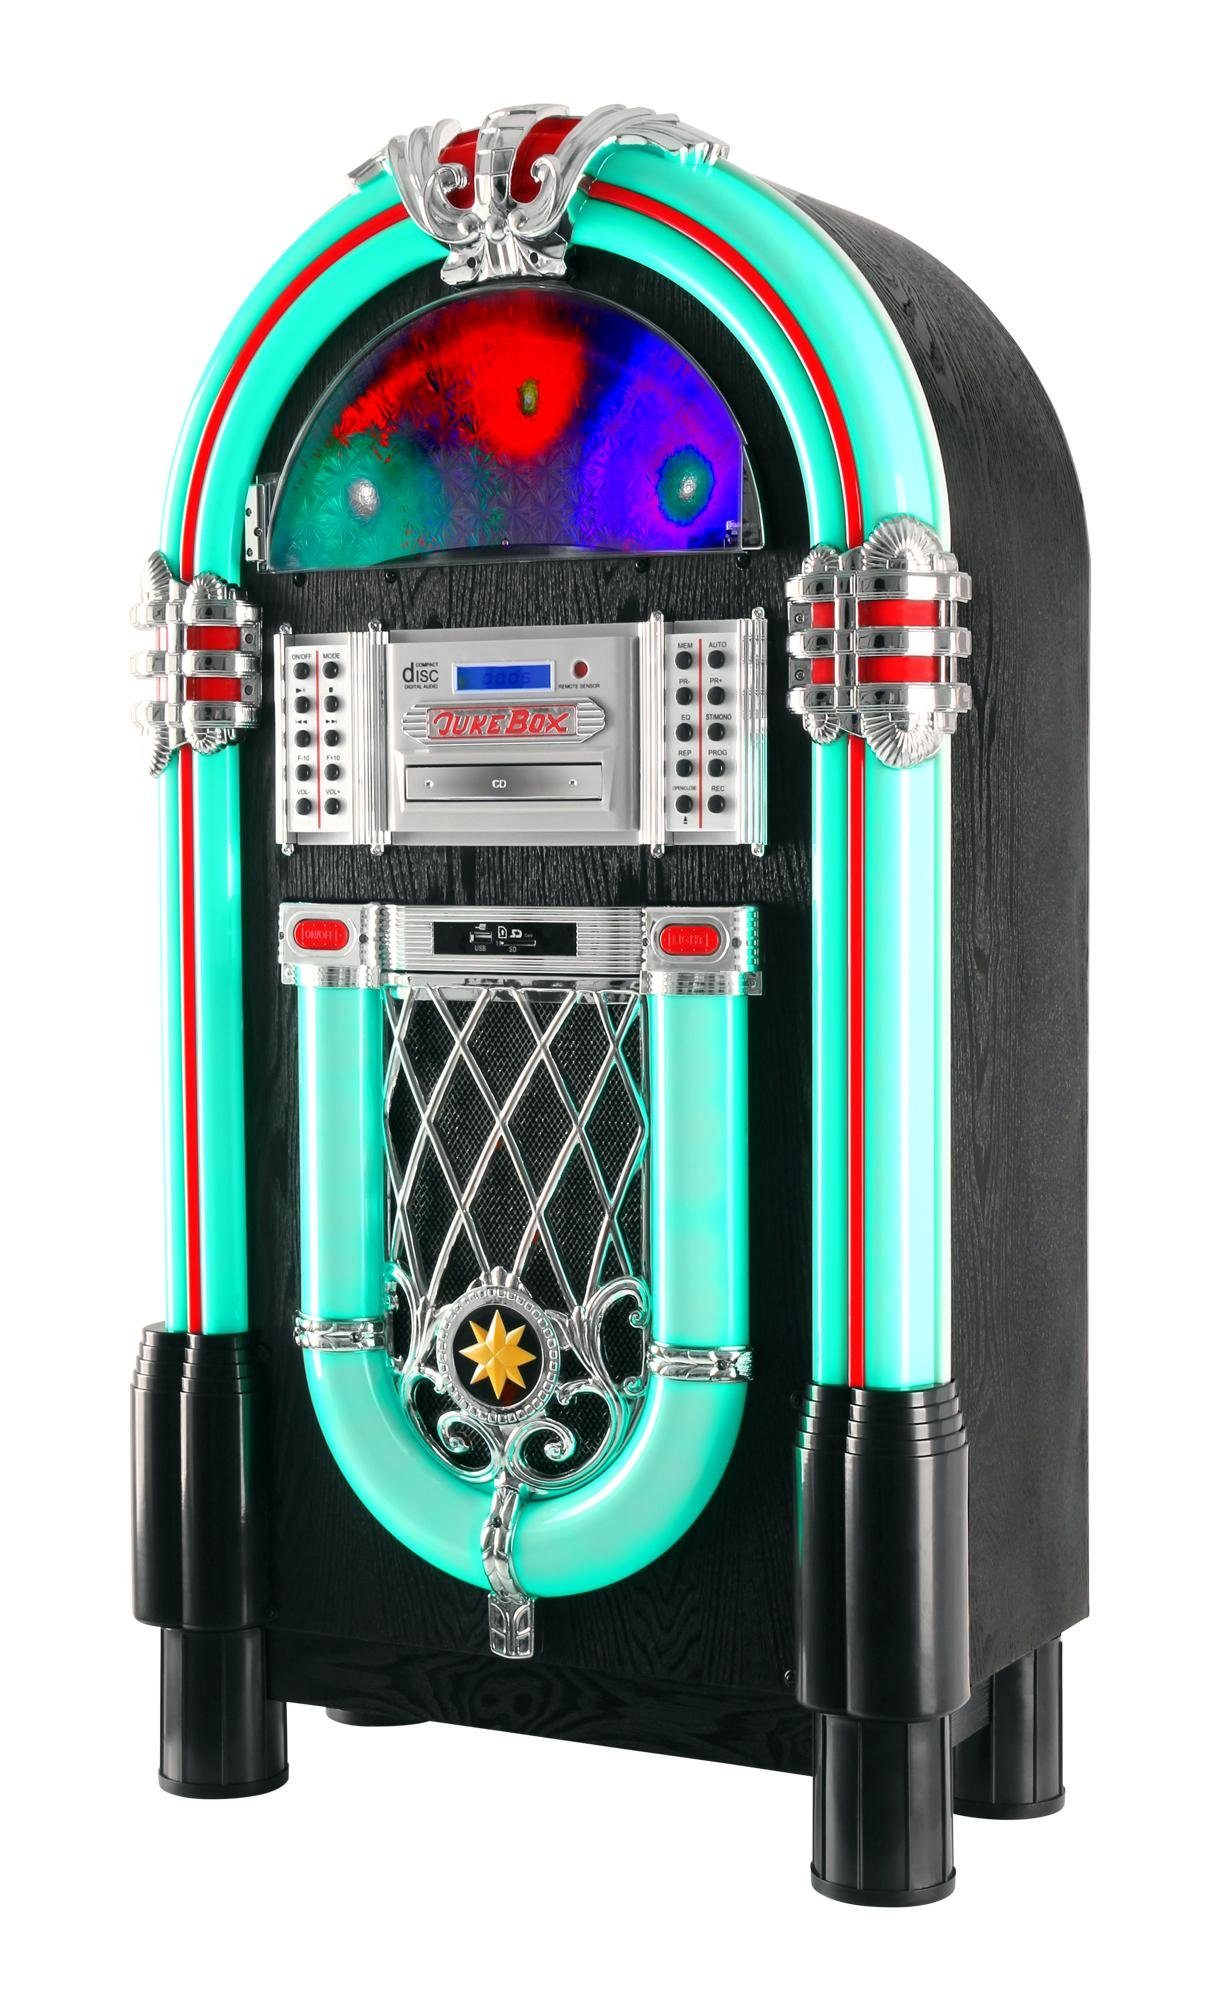 Beatfoxx »GoldenAge XXL-Jukebox mit Plattenspieler, CD-Player, UKW-Radio,  Bluetooth - Retro Musikbox mit LED-Beleuchtung und Holz-Gehäuse -  USB/SD-Slot, AUX-Eingang, MP3-Player und Handy-Ablage« Stereoanlage  (UKW/MW-Radiotuner) online kaufen | OTTO